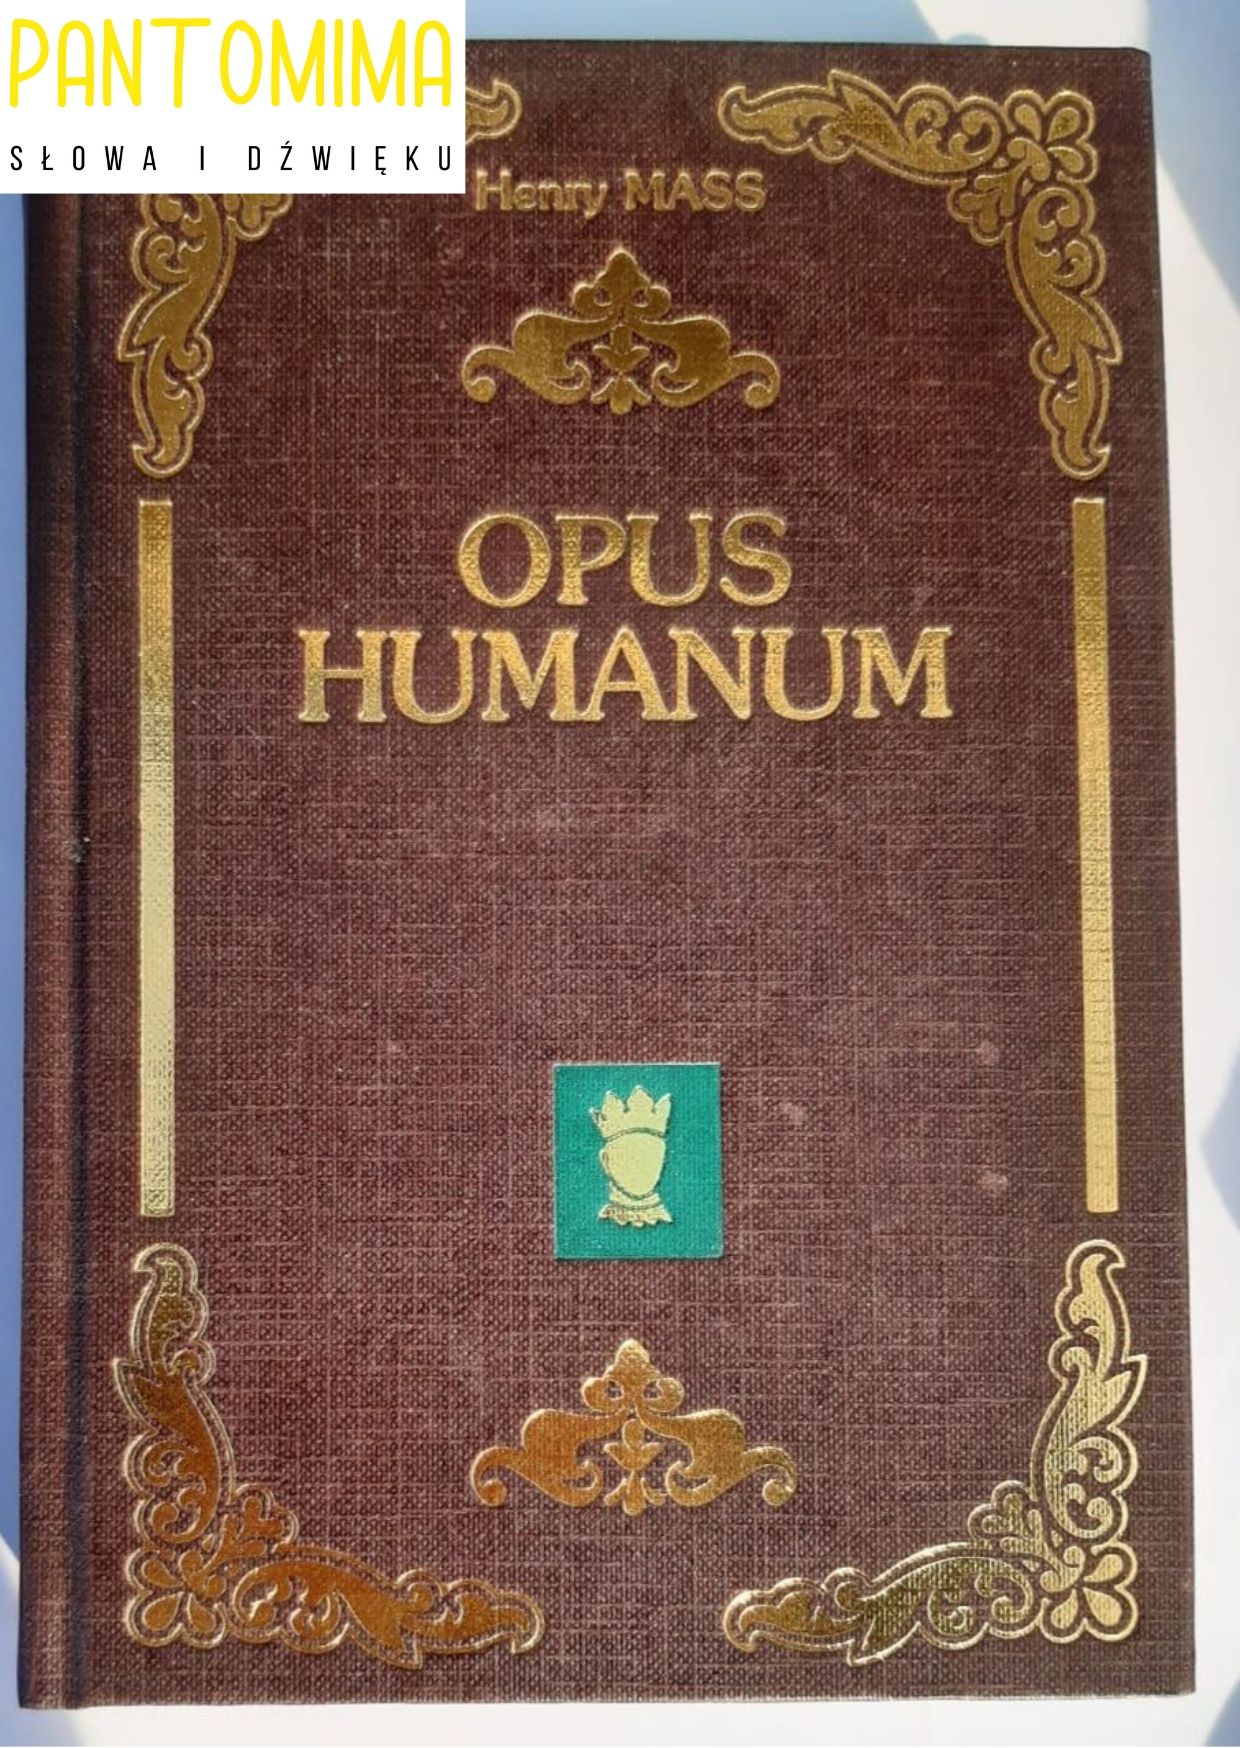 Henry mass opus humanum XX78